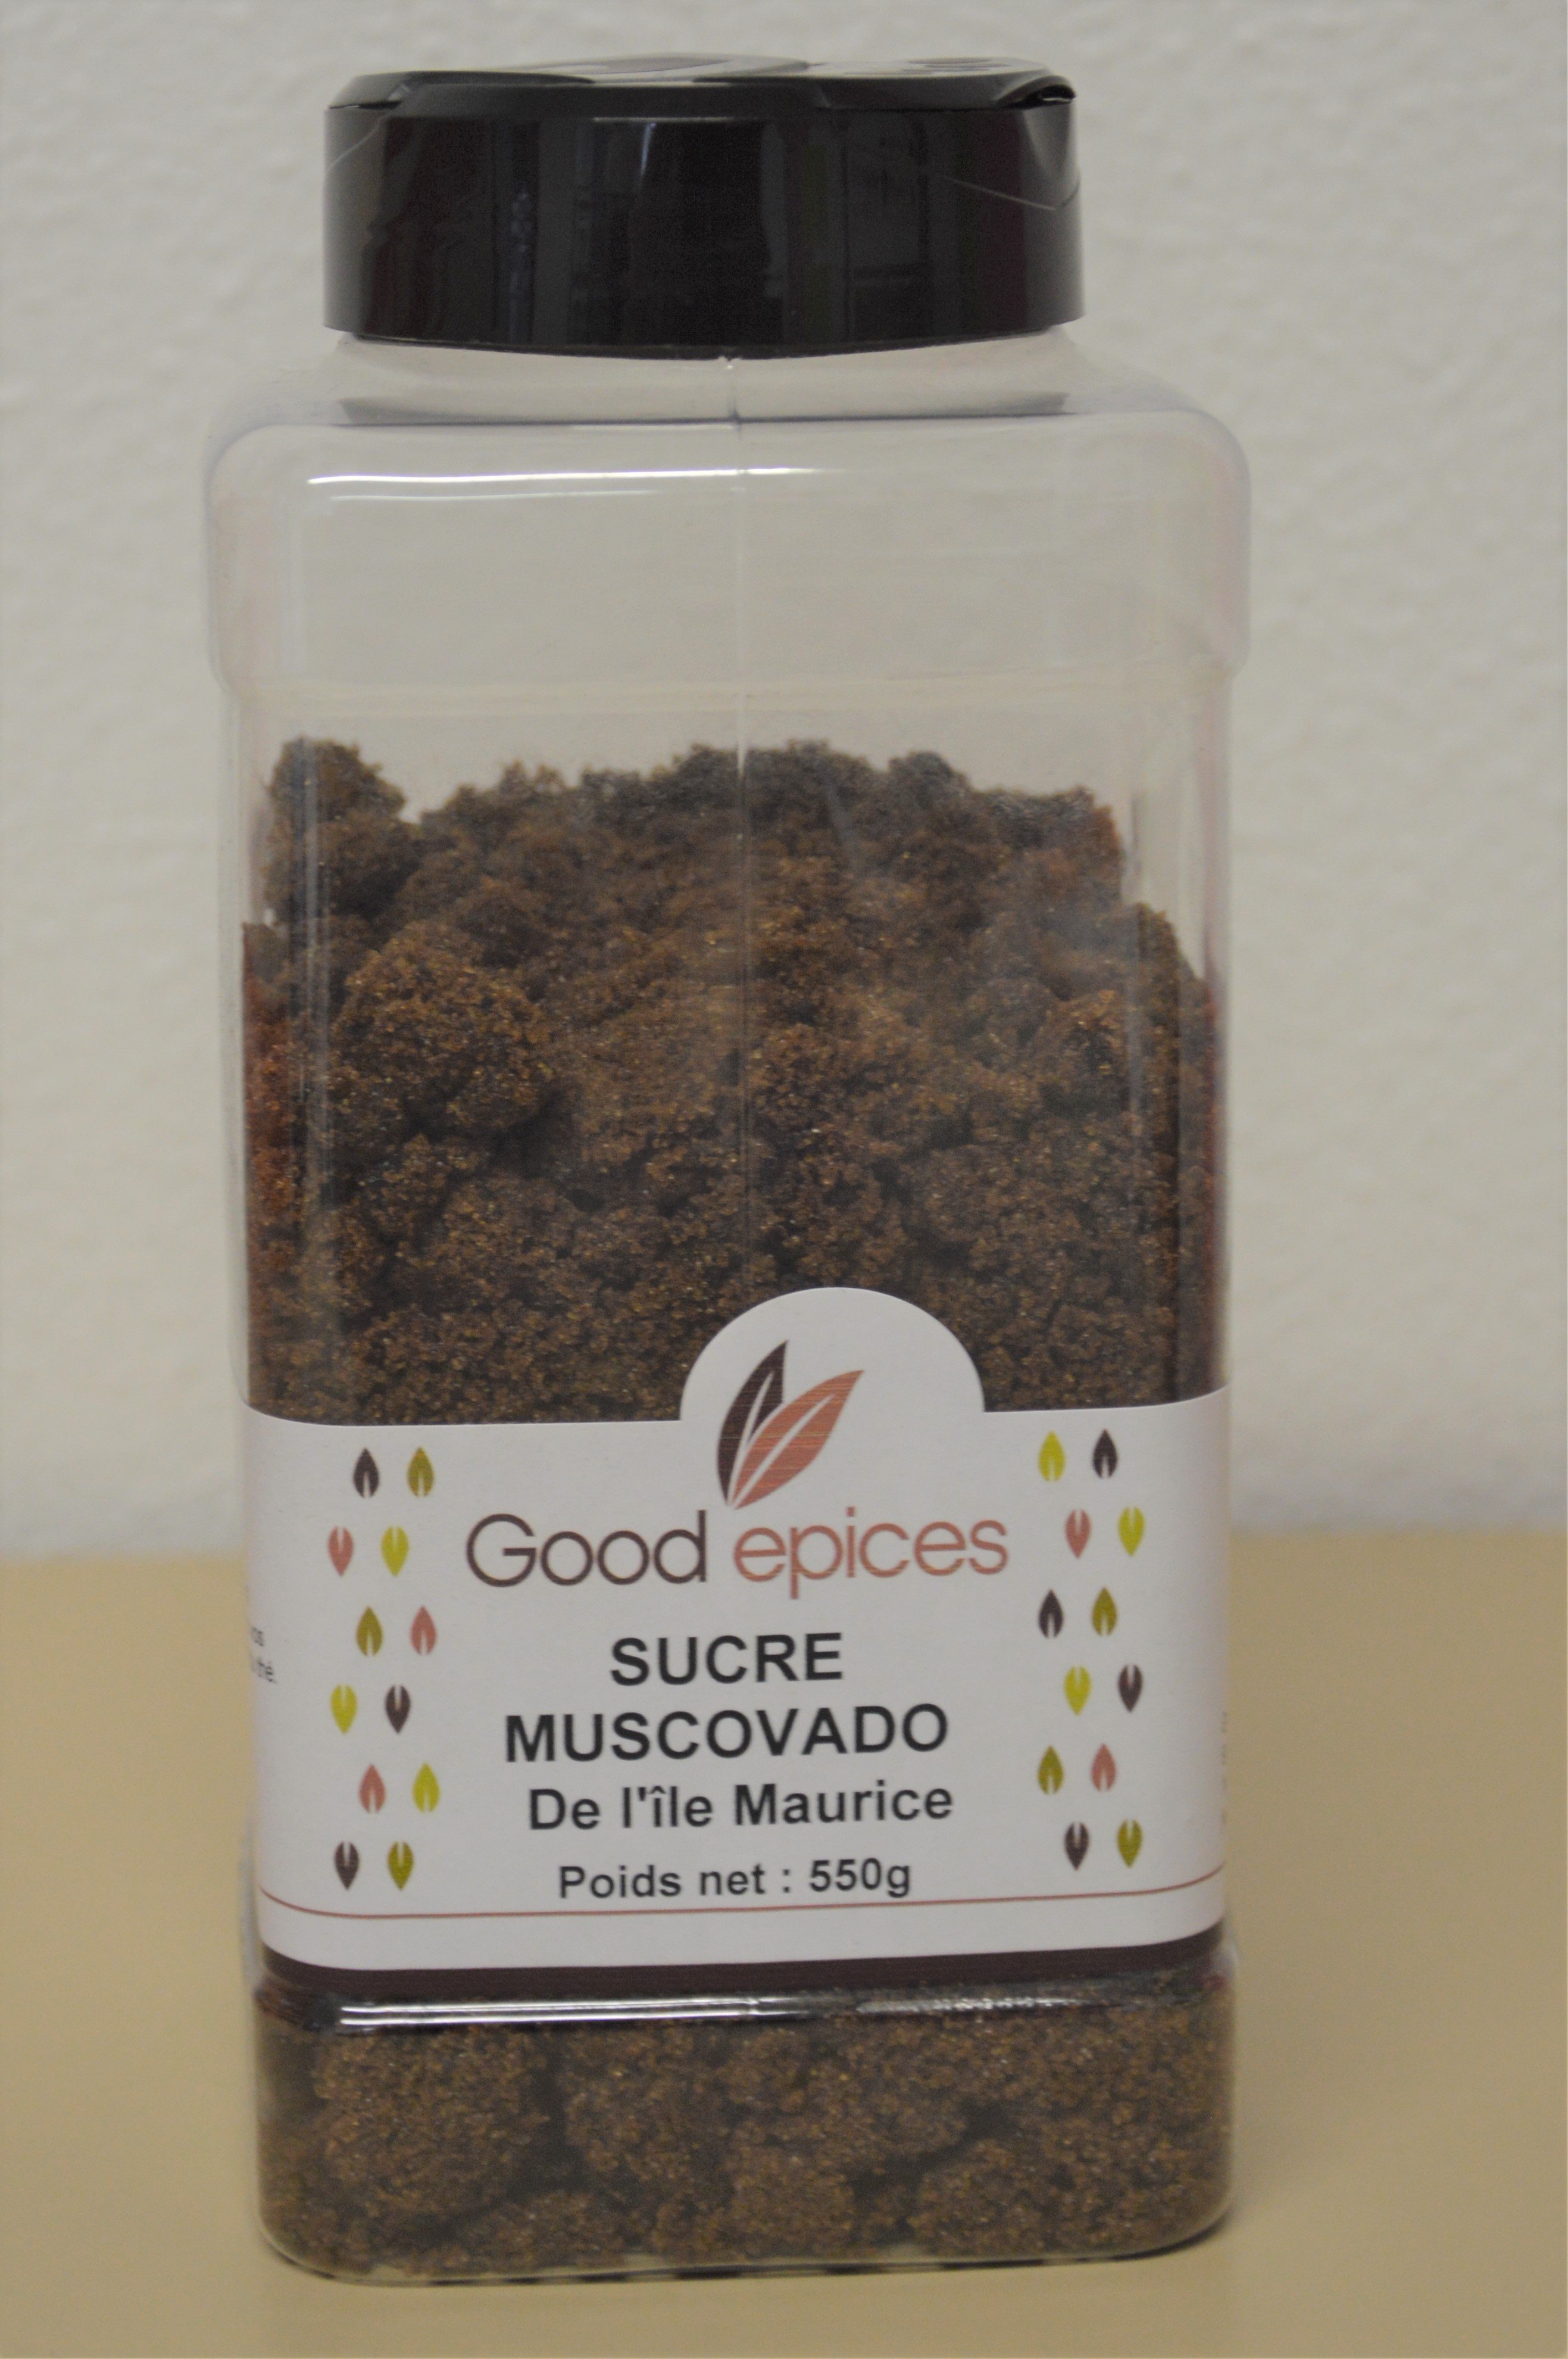 Good épices Sucre muscovado de l'Ile Maurice 600gr